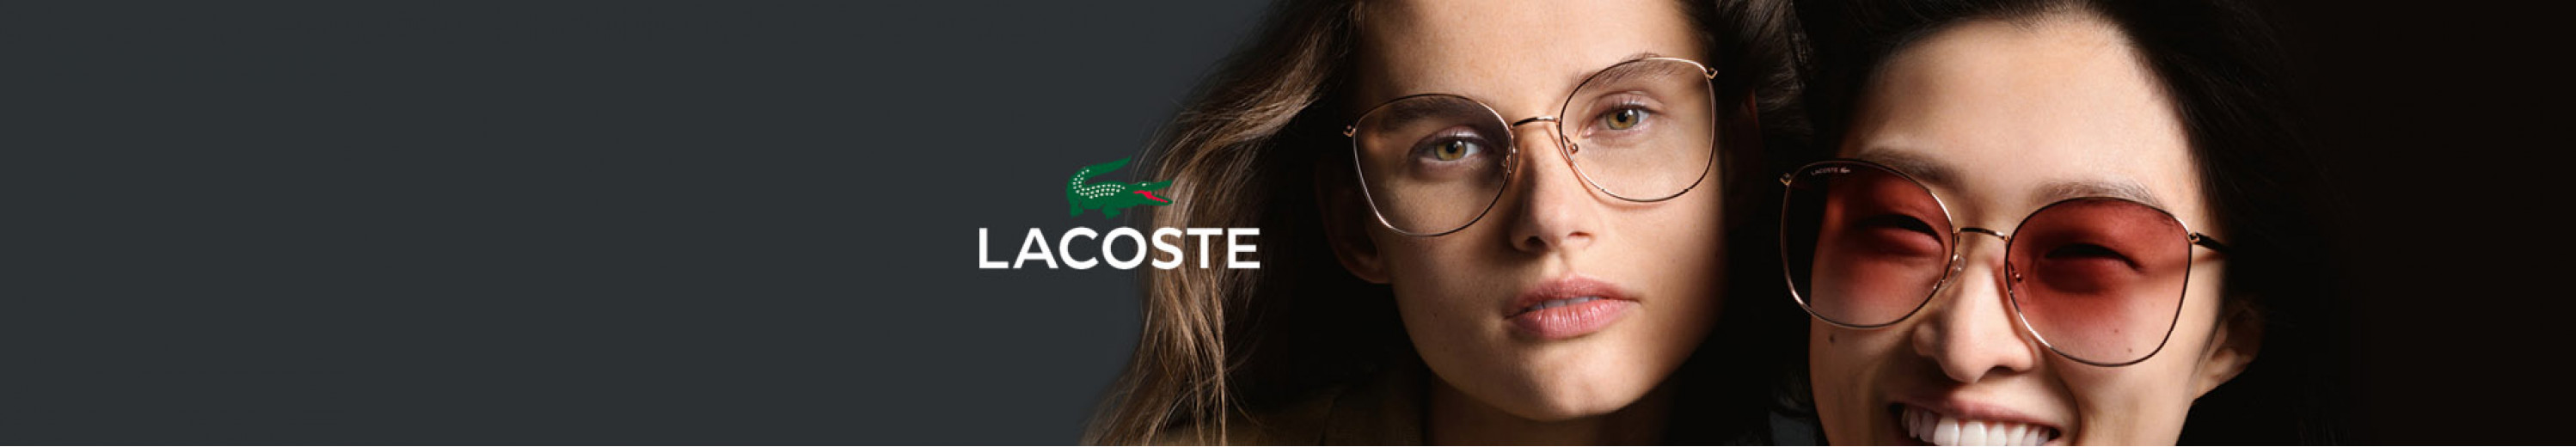 Lacoste Eyeglasses for Women